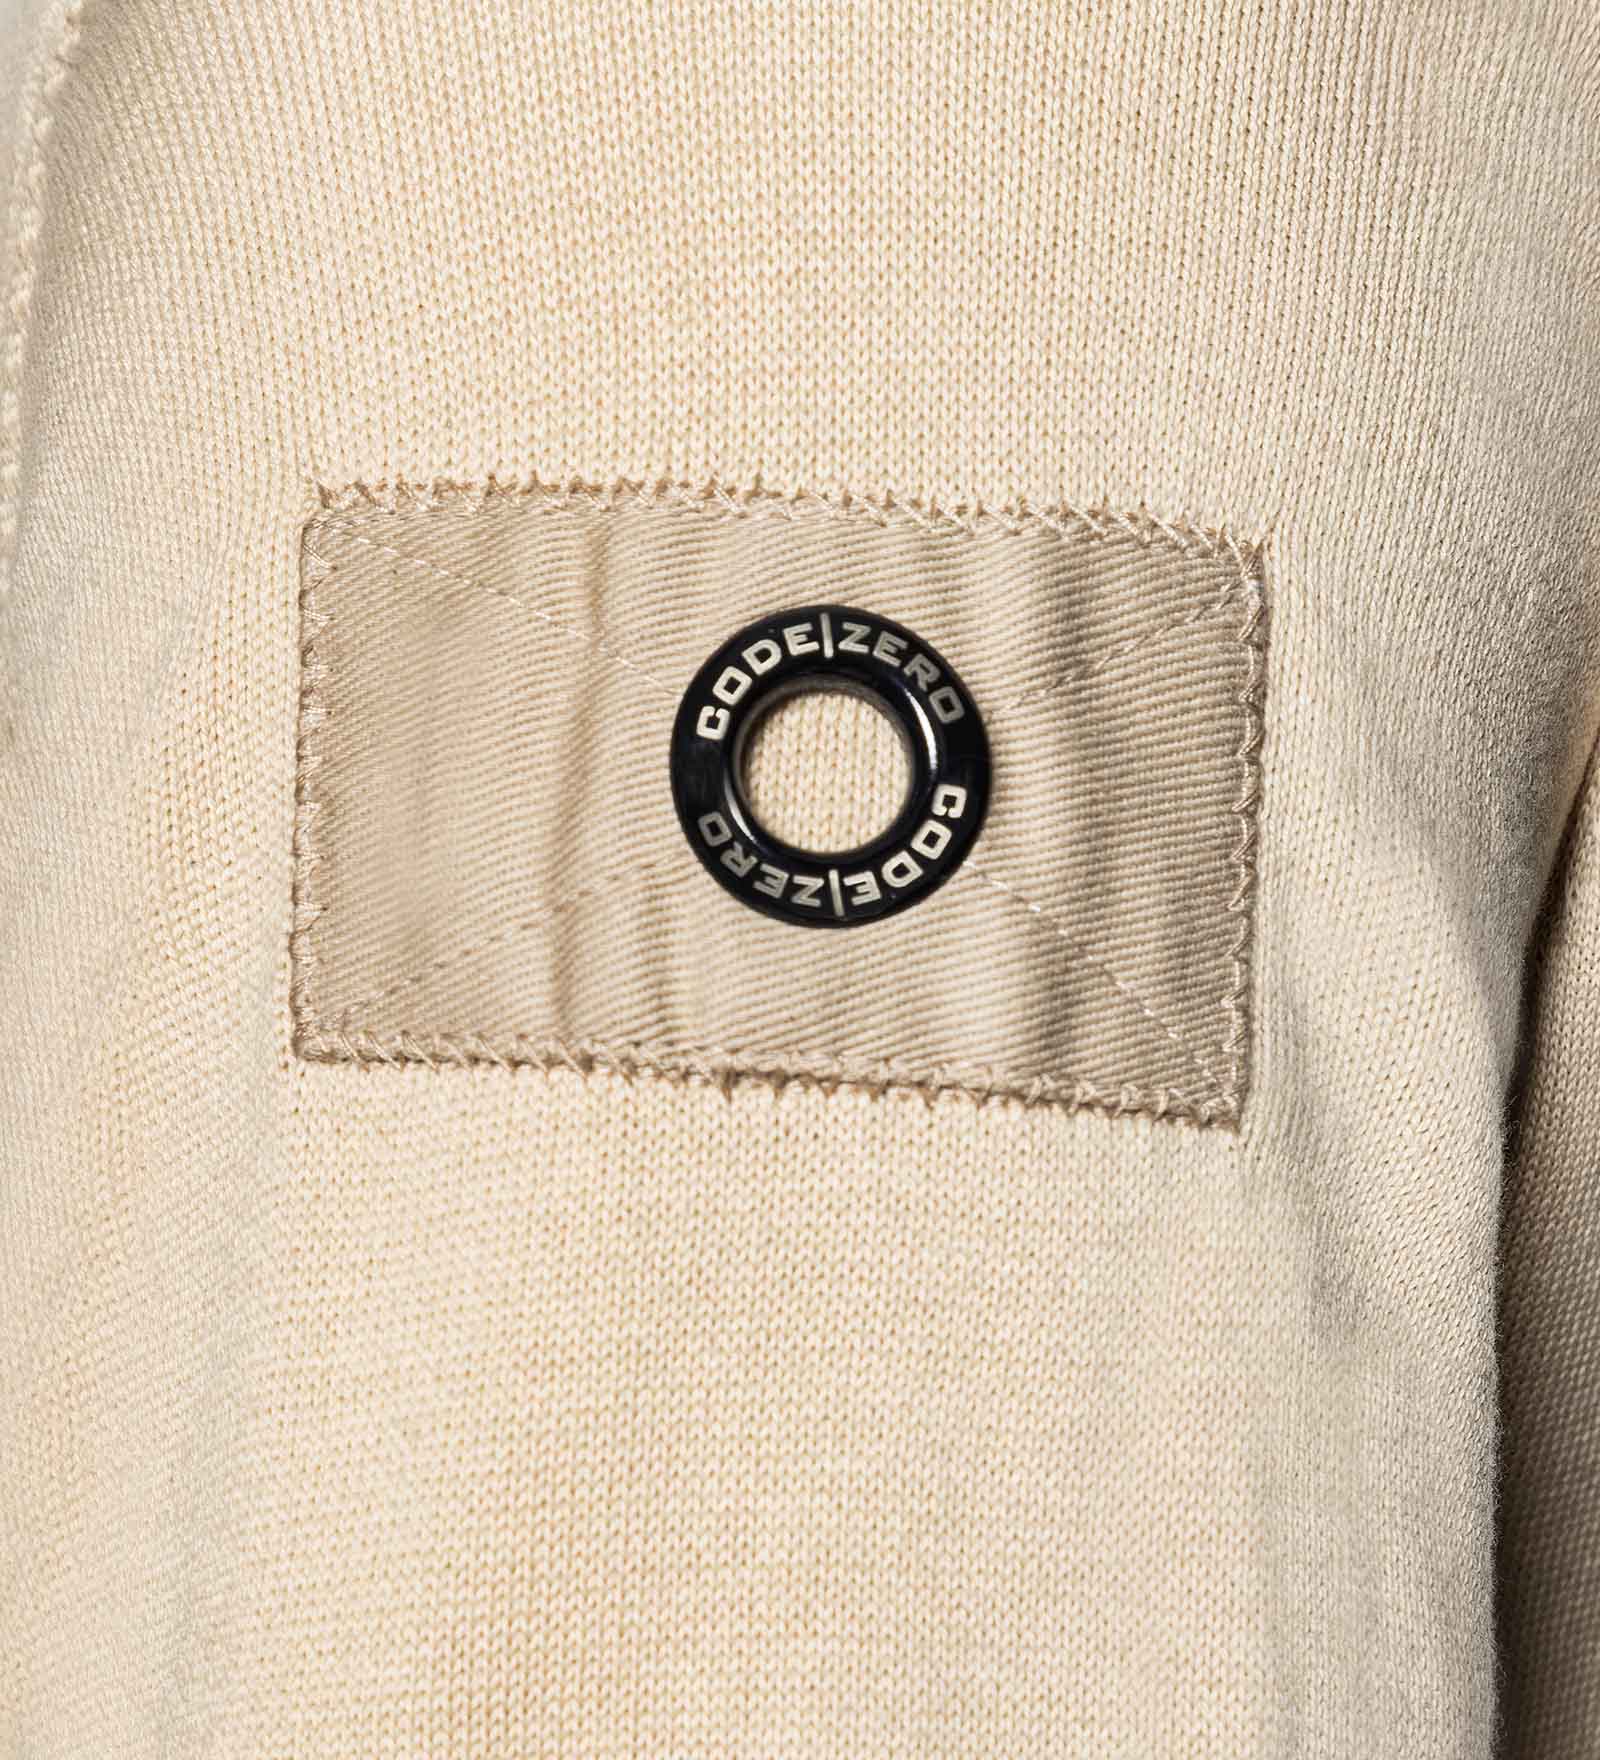 Details of a beige jumper